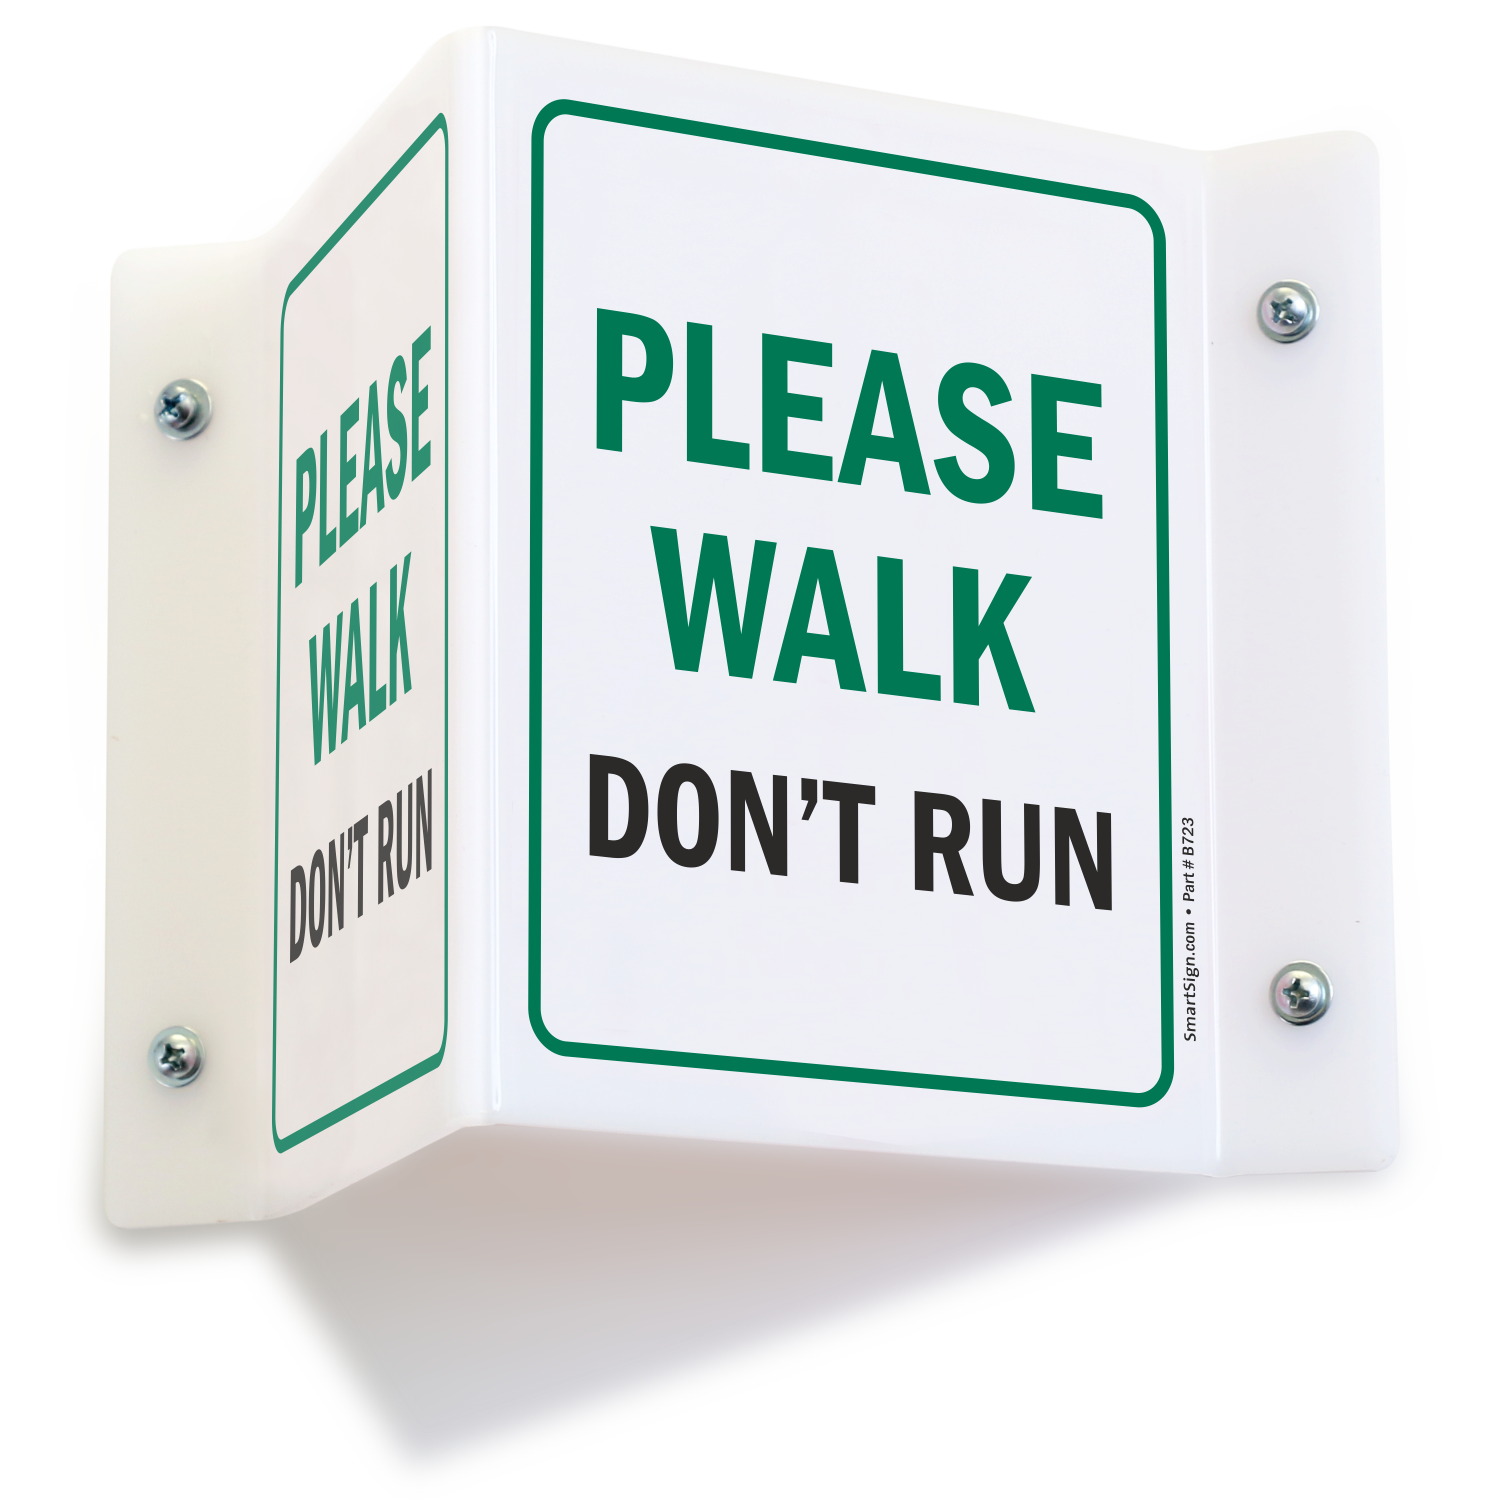 Dont run. Walk don't Run. Please don't Run. Don't walk sign. Don't Run sign.